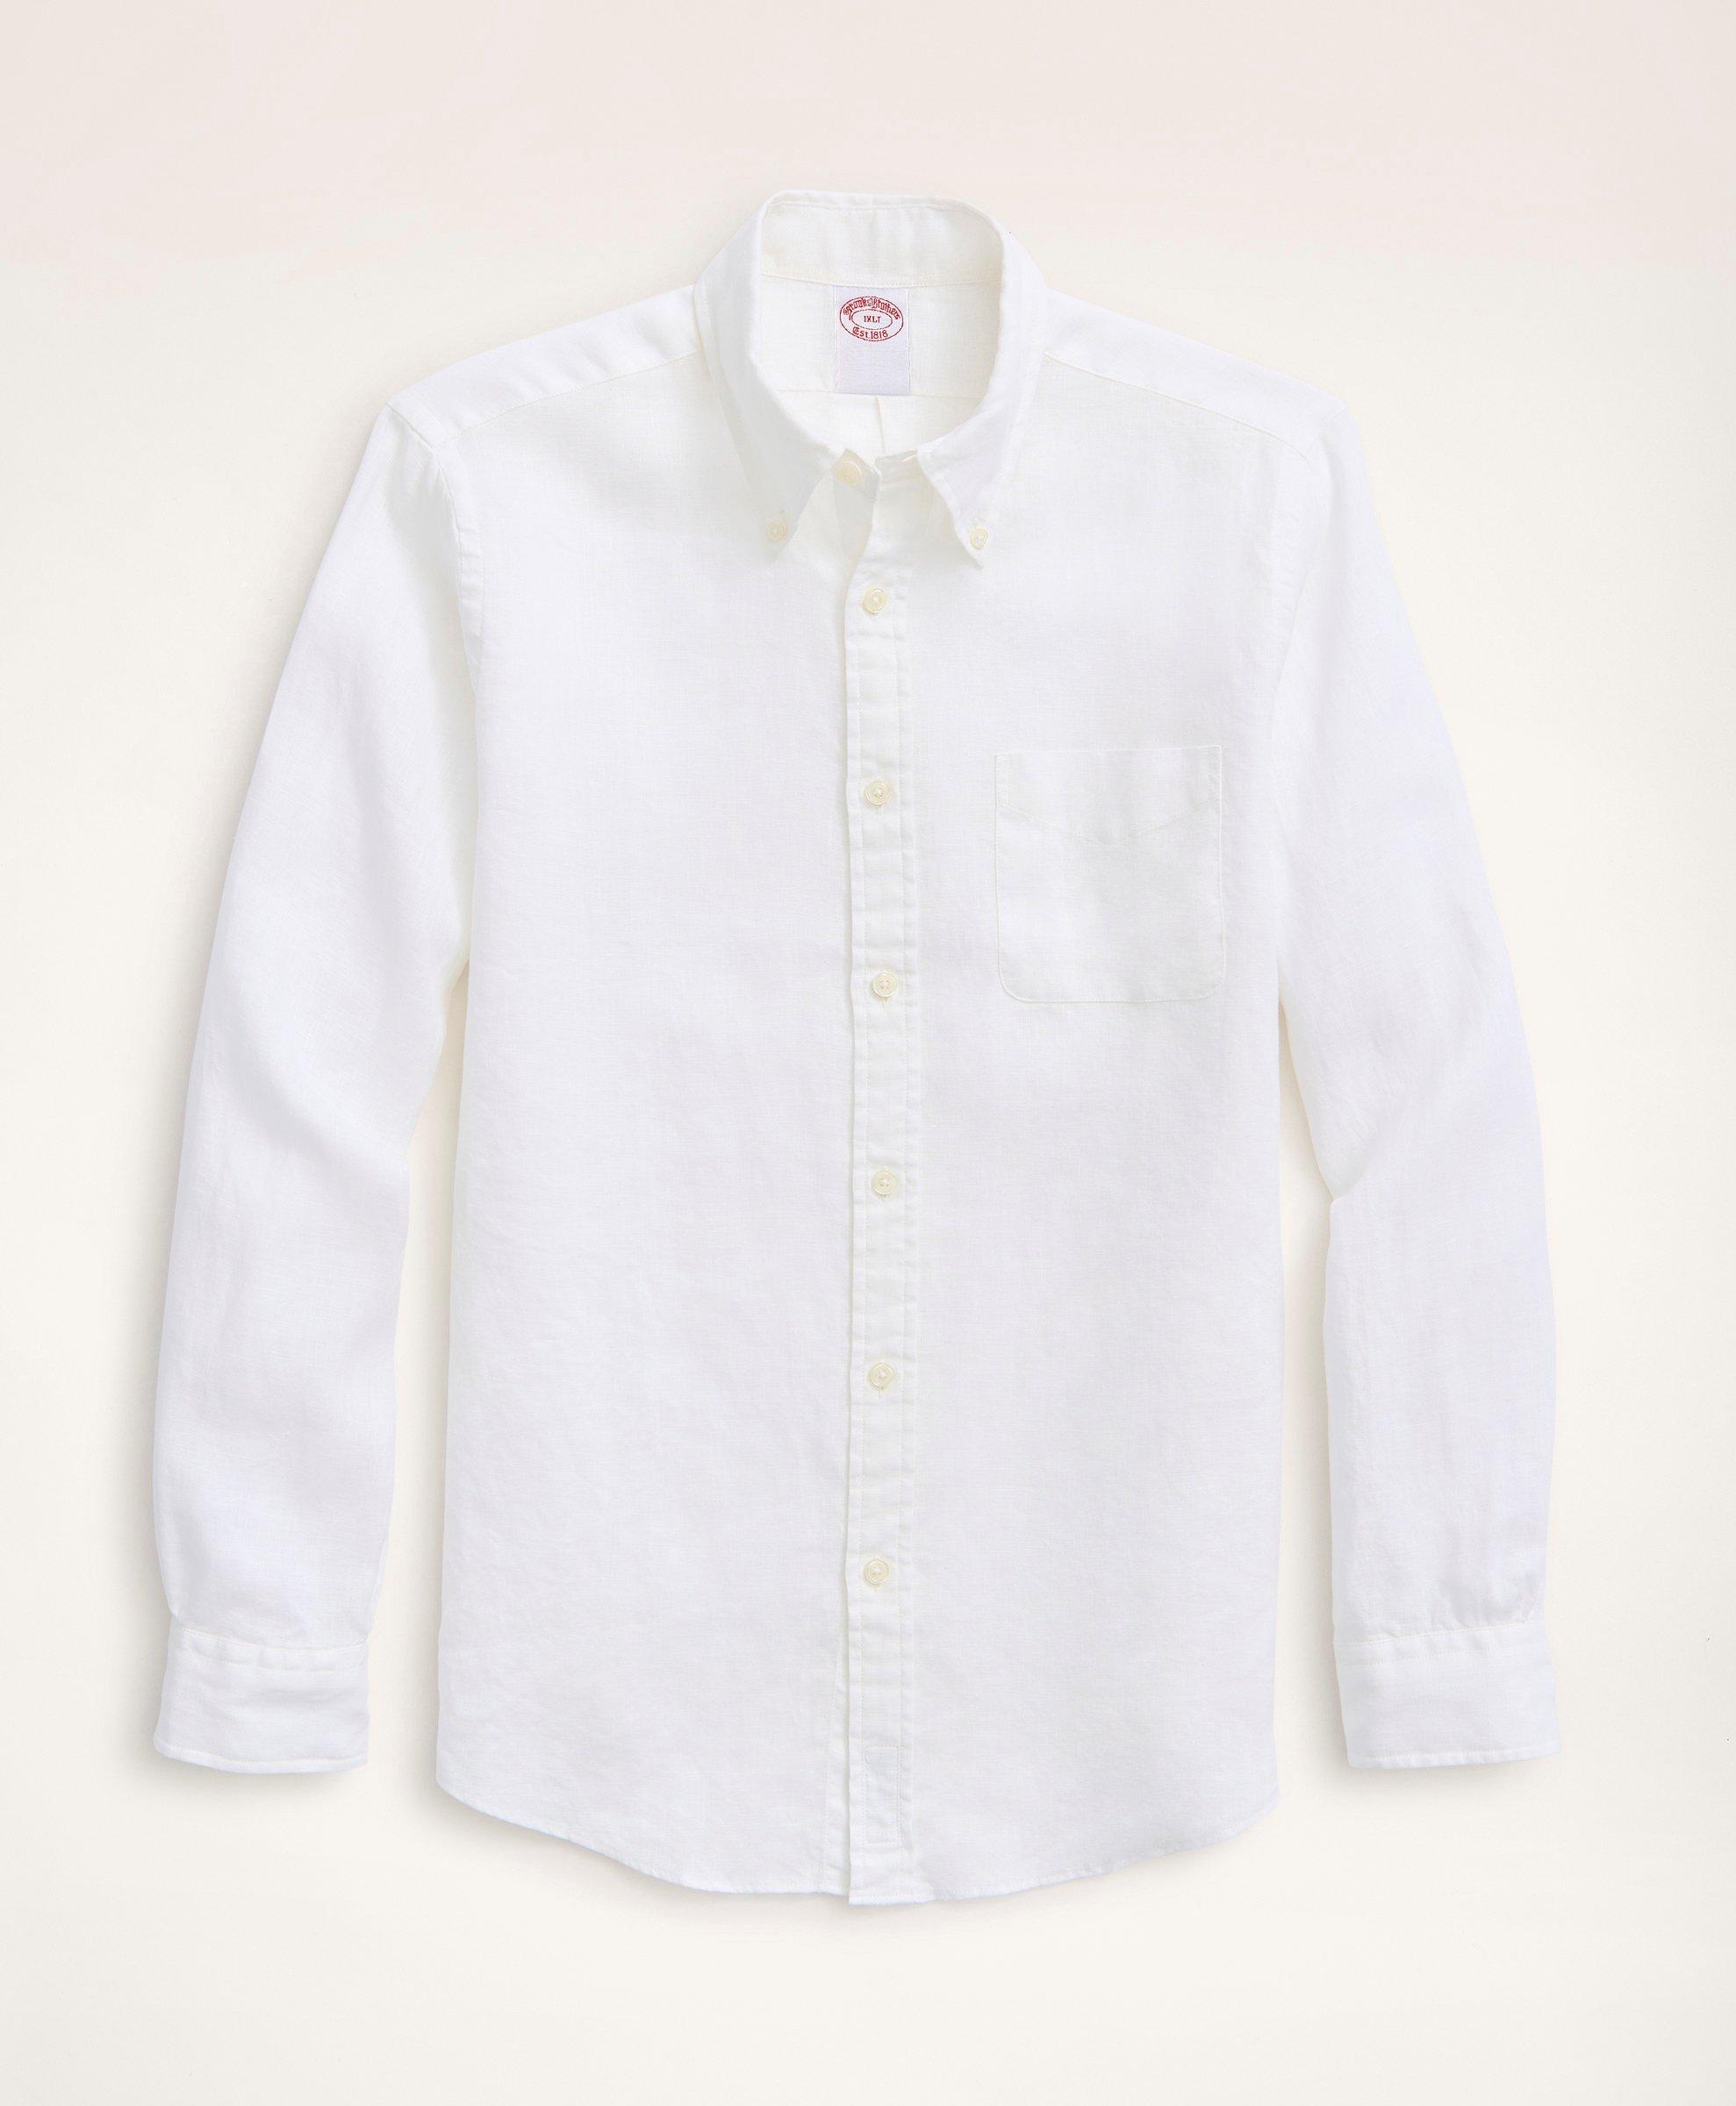 Brooks Brothers Big & Tall Sport Shirt, Irish Linen | White | Size 1x Tall